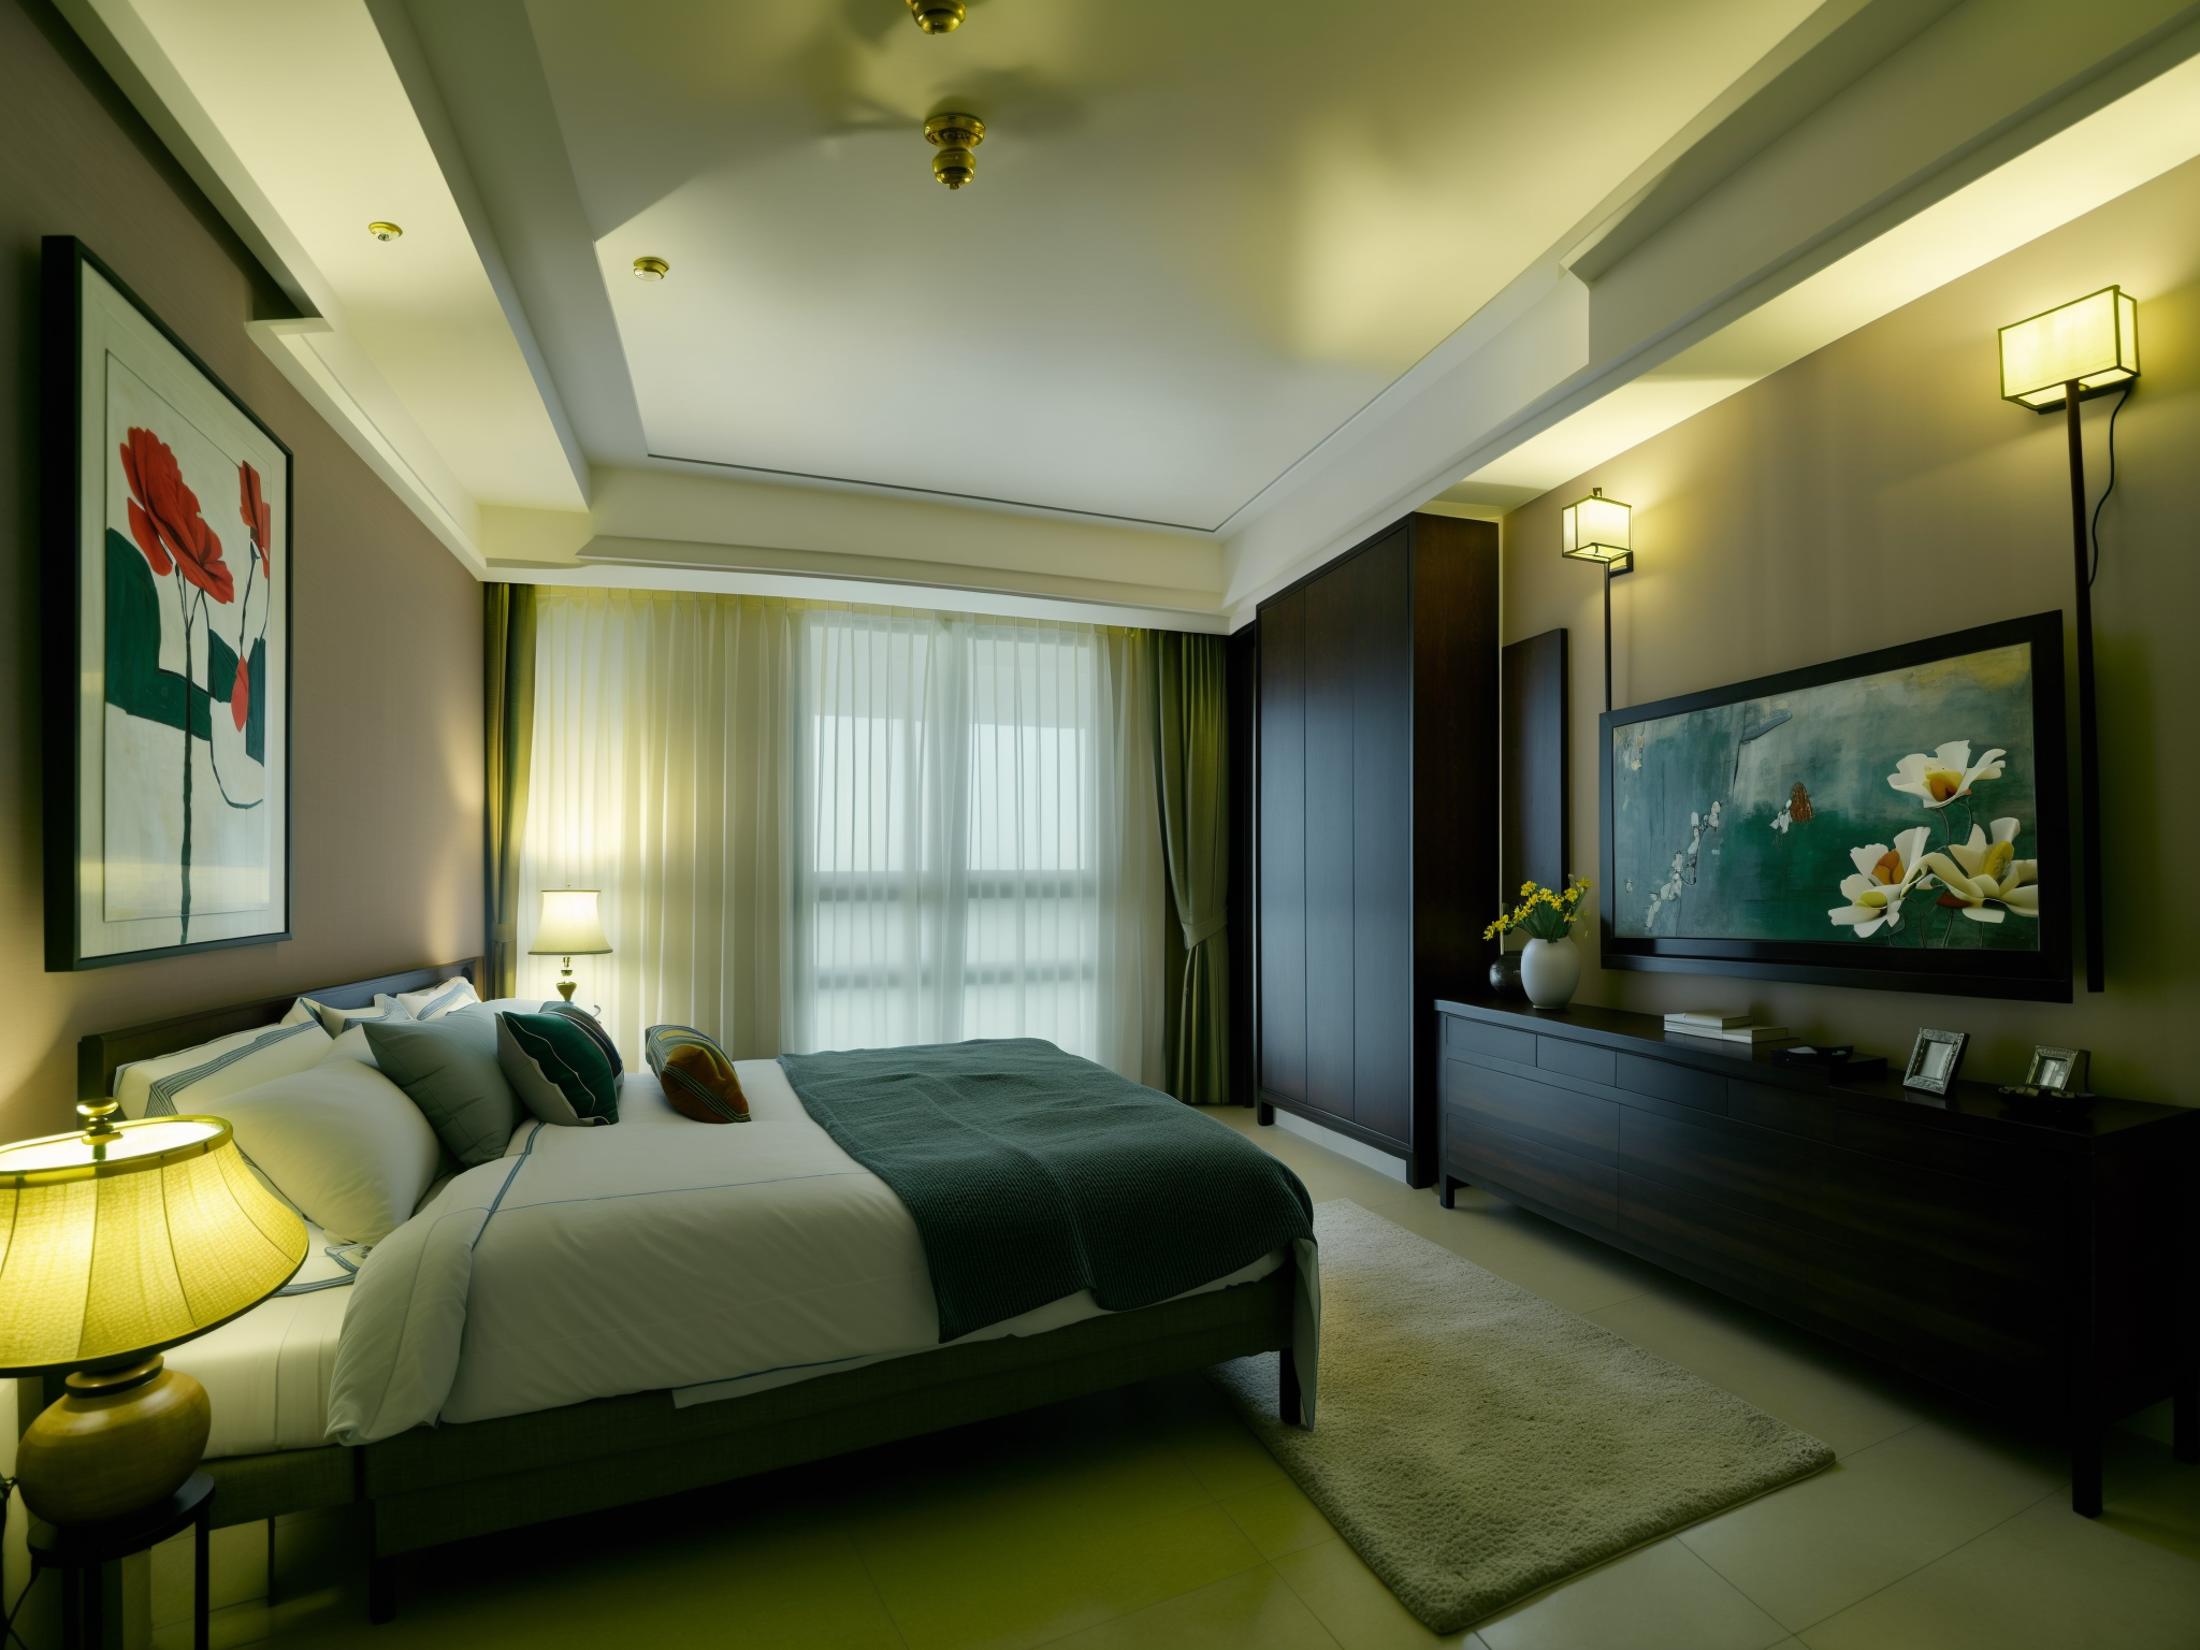 JJ's Interior Space - Bedroom image by jjhuang